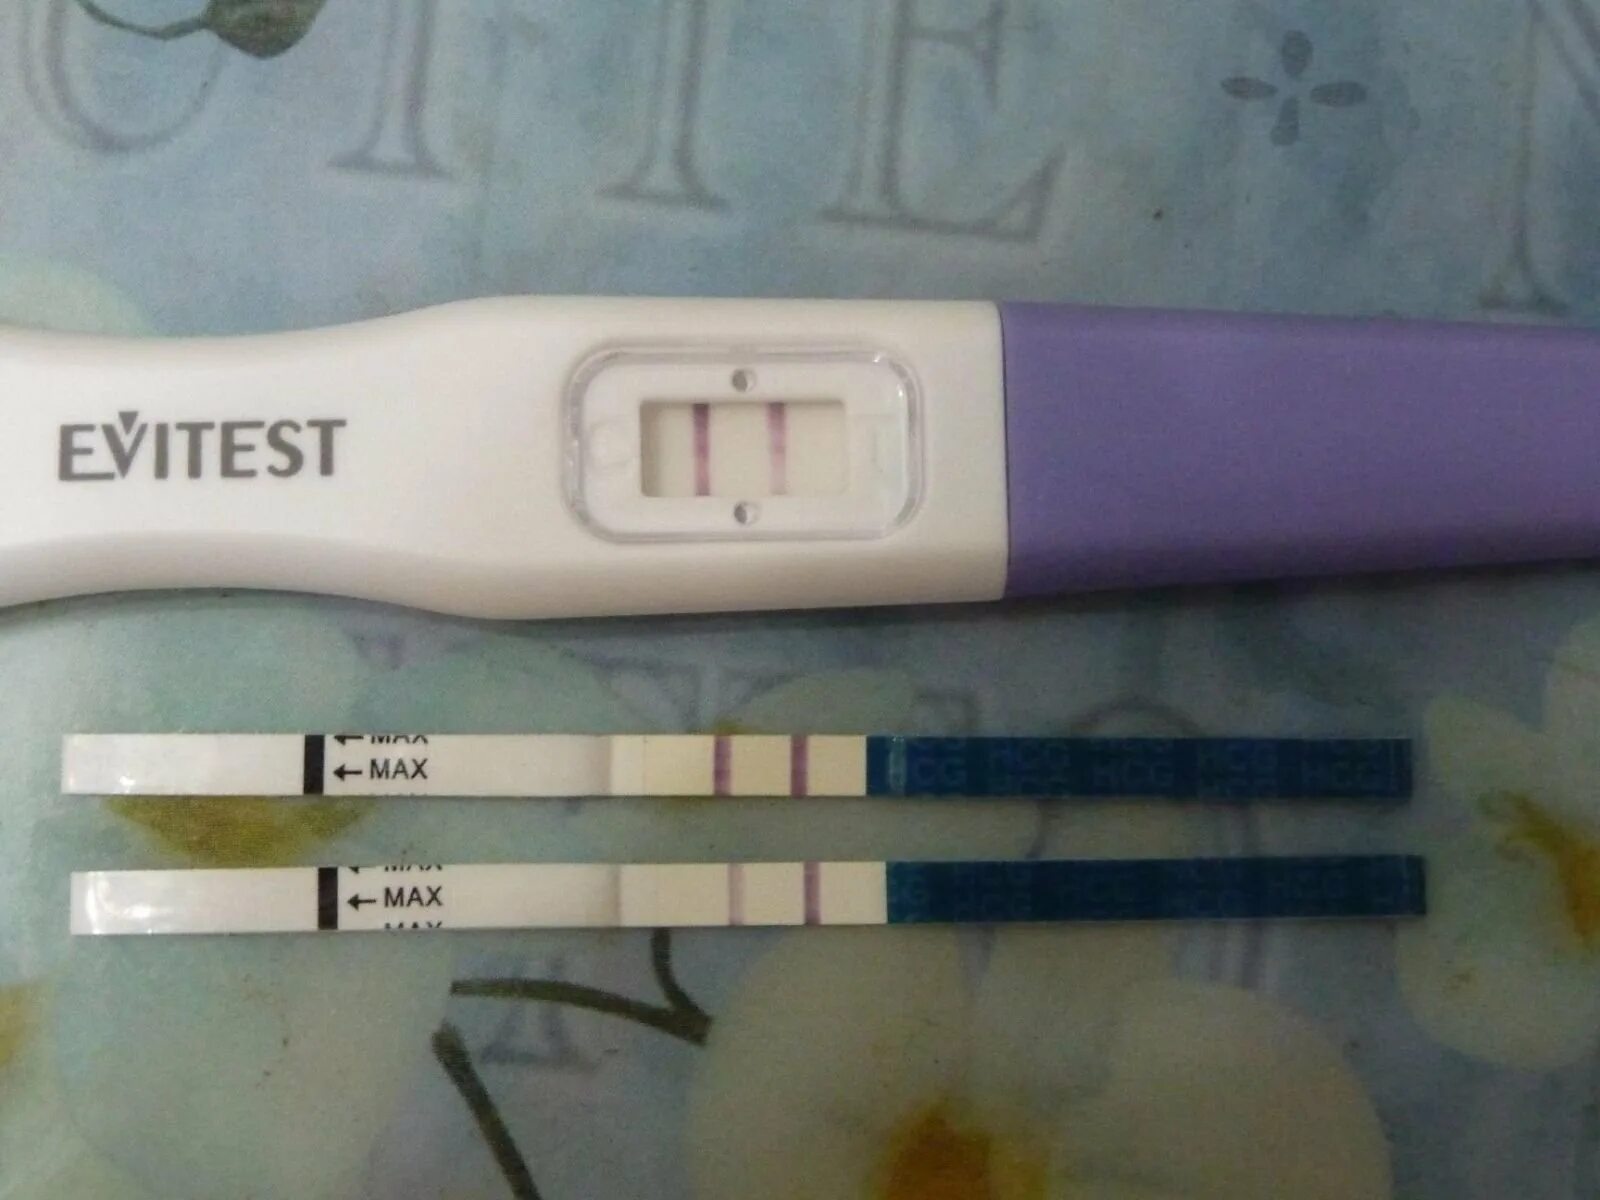 Тест за 7 дней до задержки. Тест на беременность 4 дня до задержки. Тест на беременность за 2-3 дня до задержки. Струйный тест эвитест за 3 дня до месячных. Тест на беременность 10 день цикла эвитест.